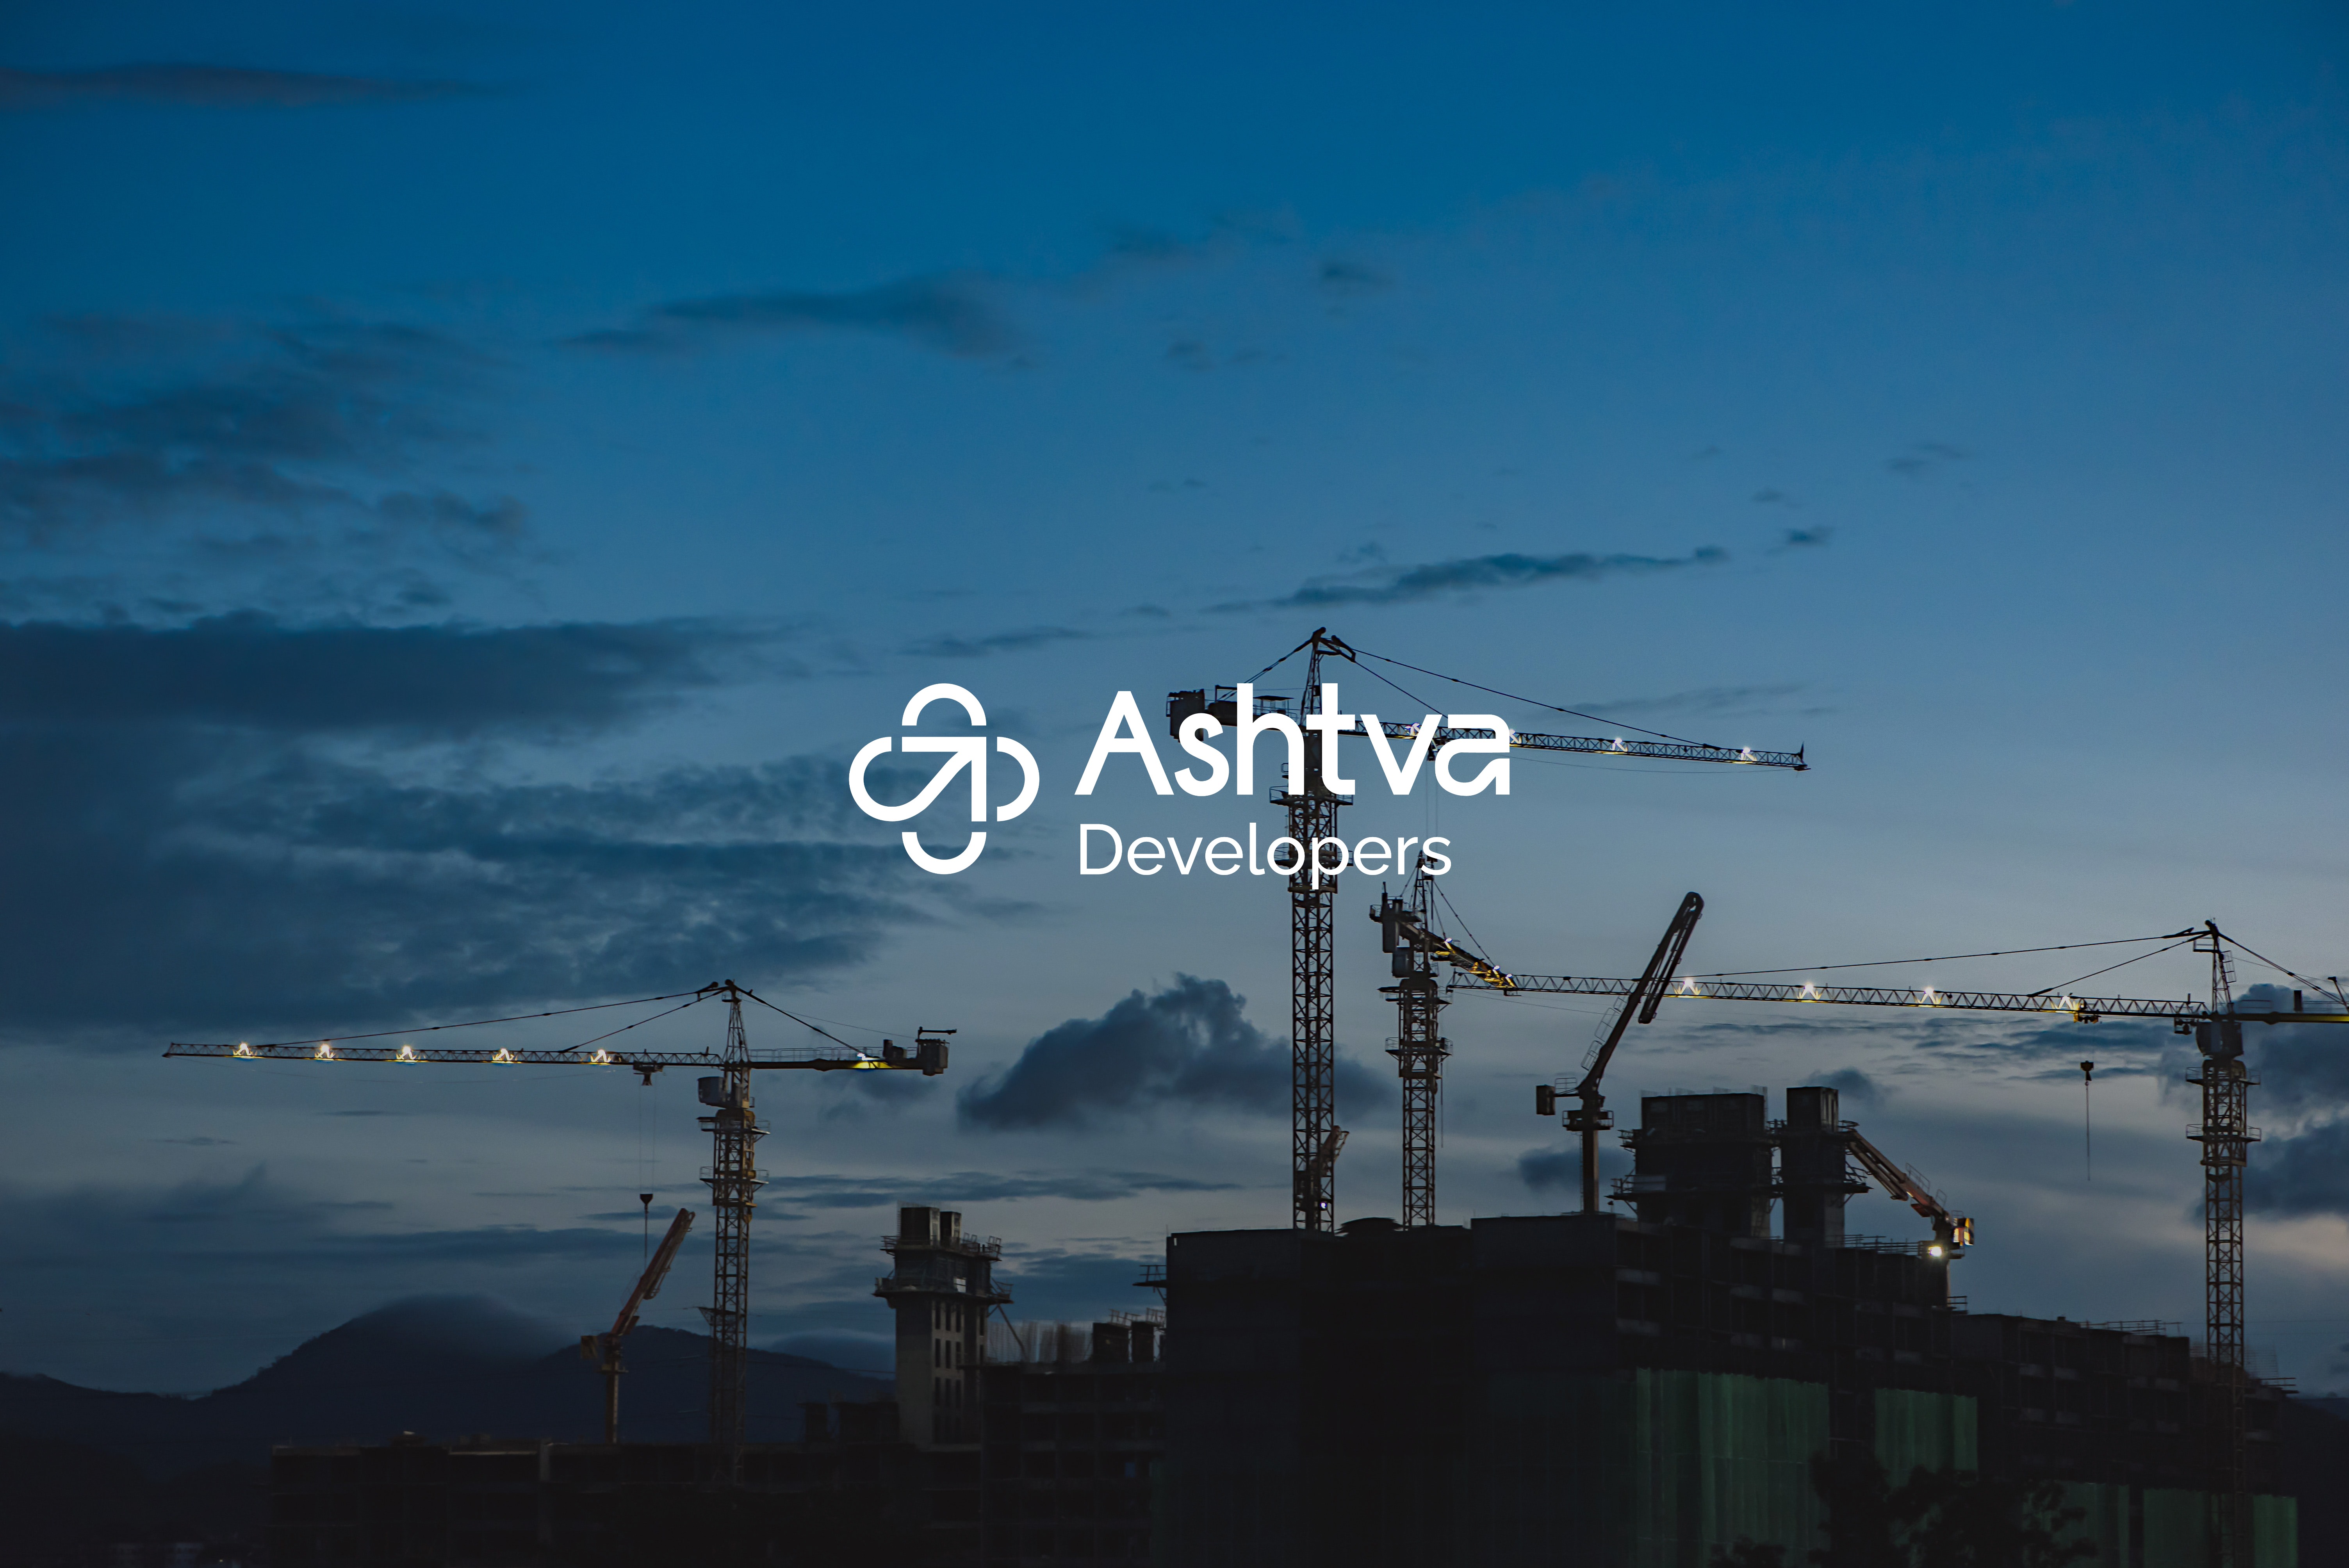 Ashtava-Developers